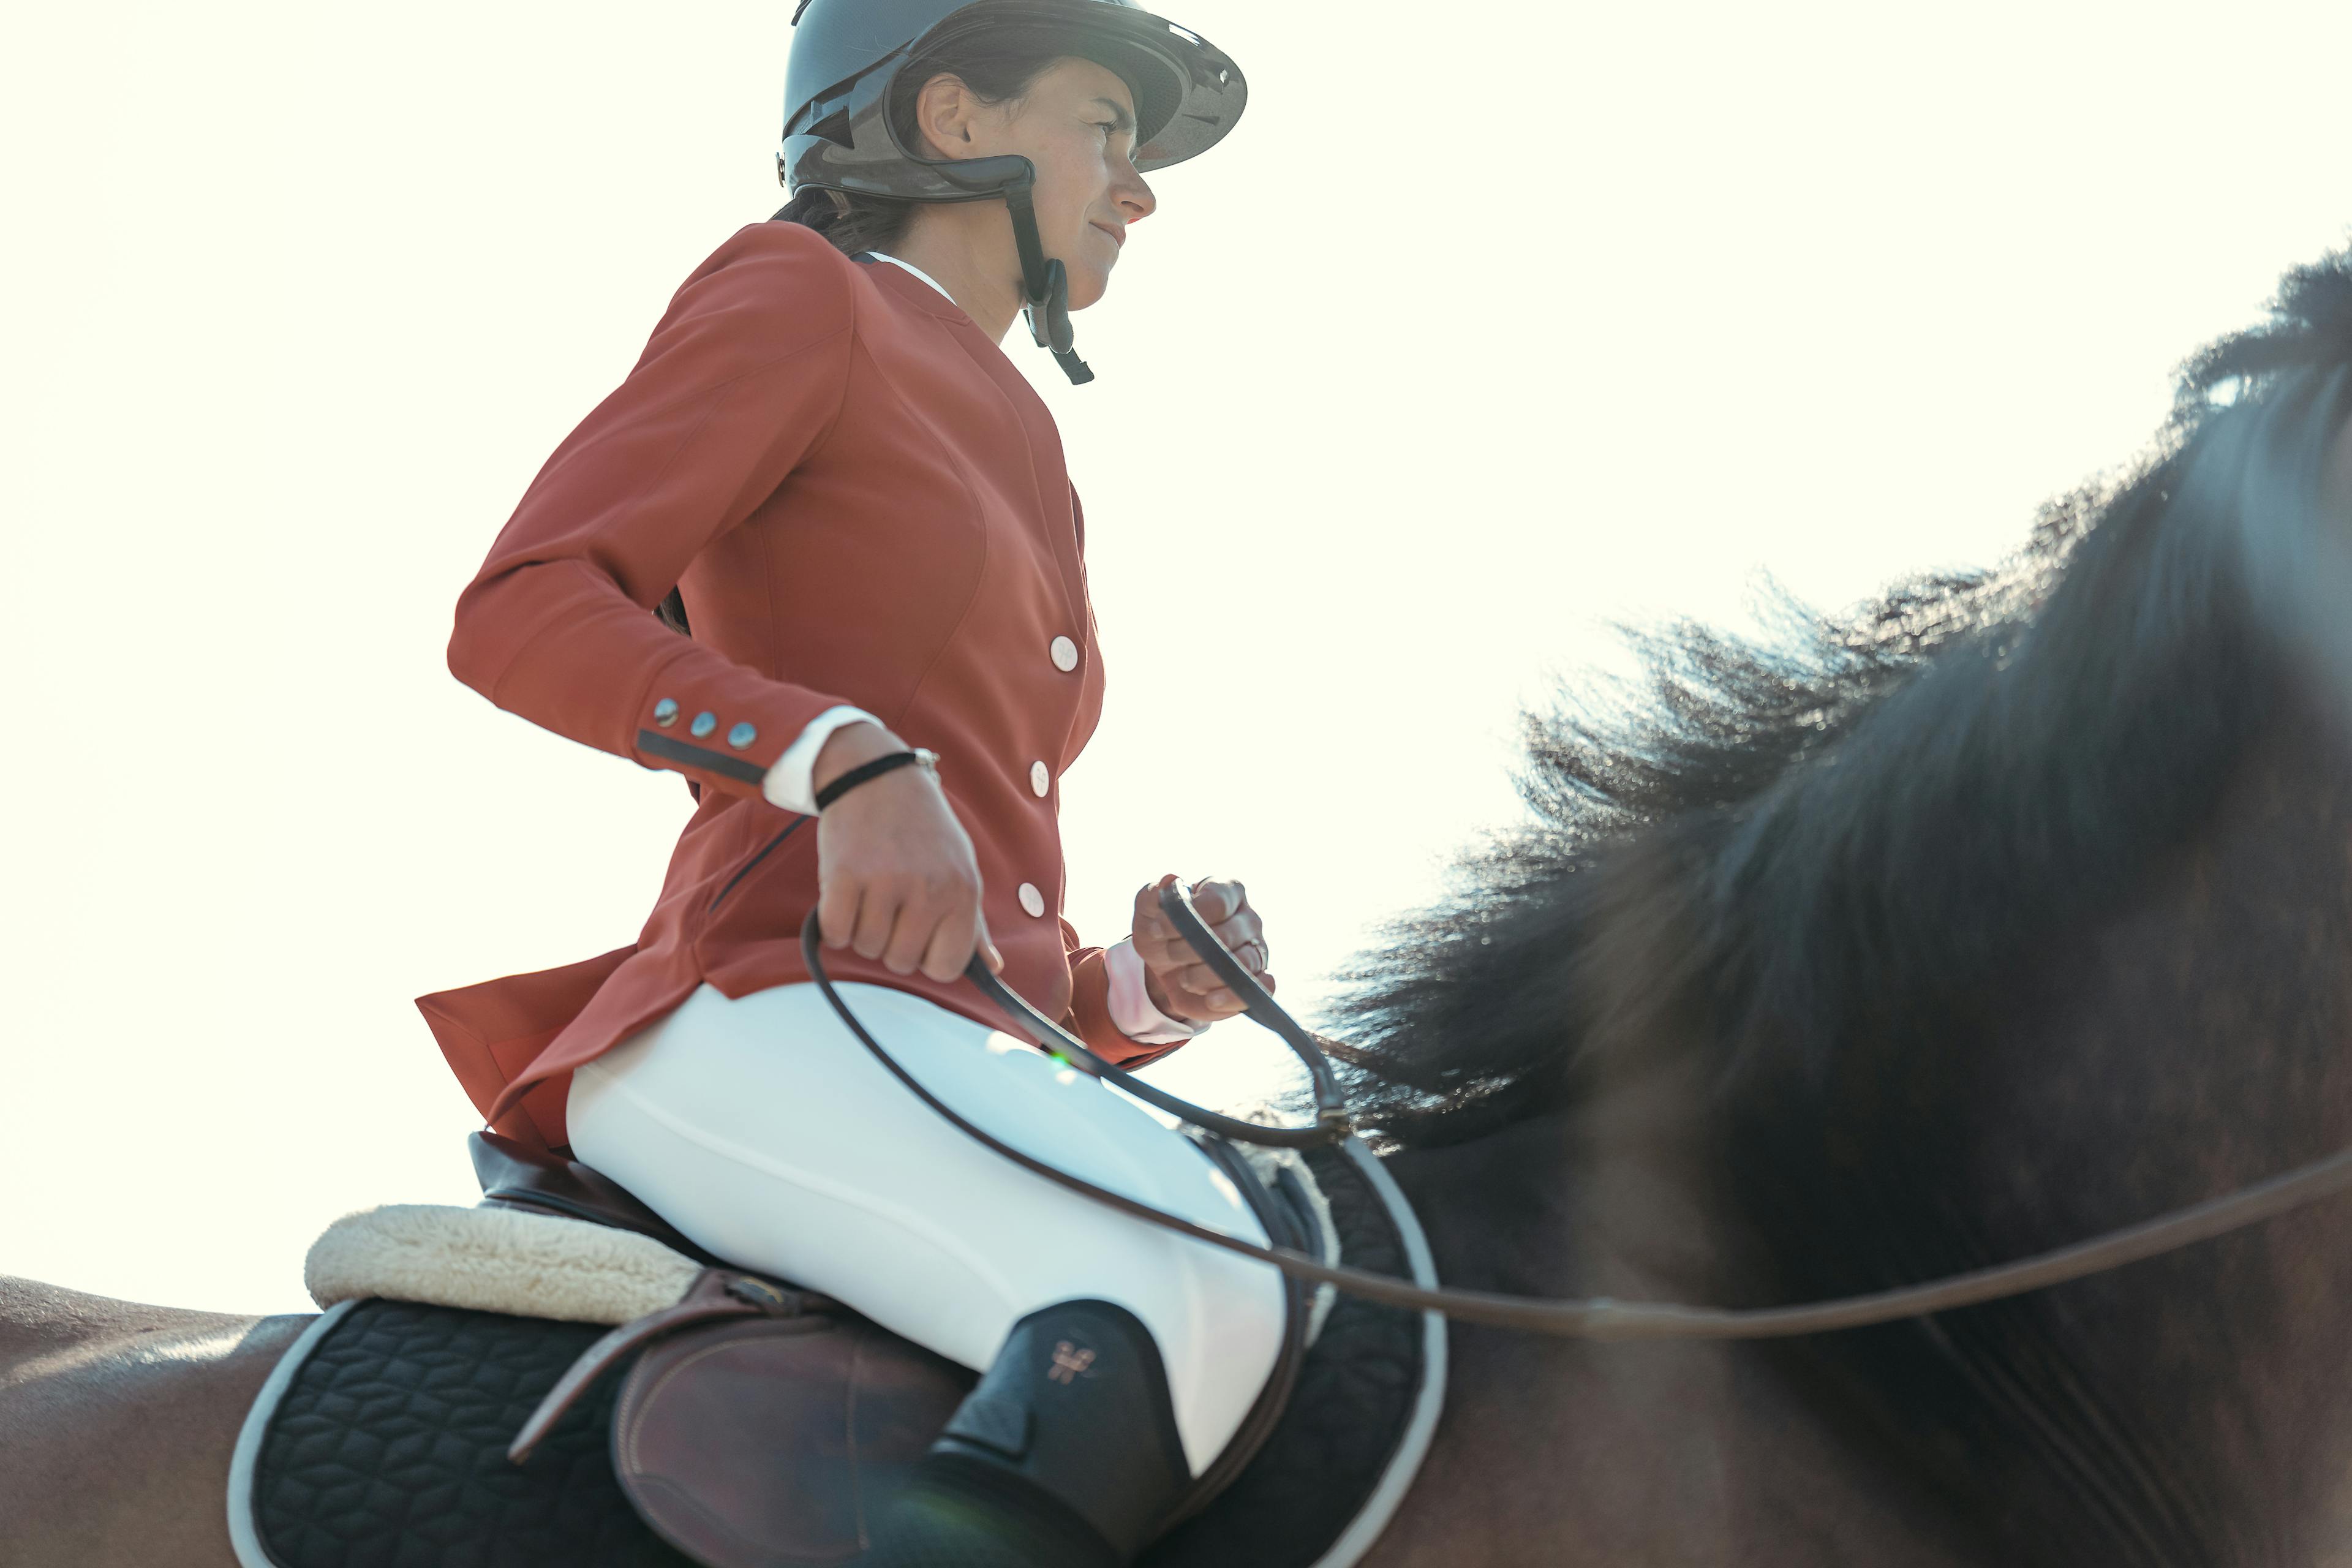 Patalon d'équitation en compétition : Comment bien le choisir ?